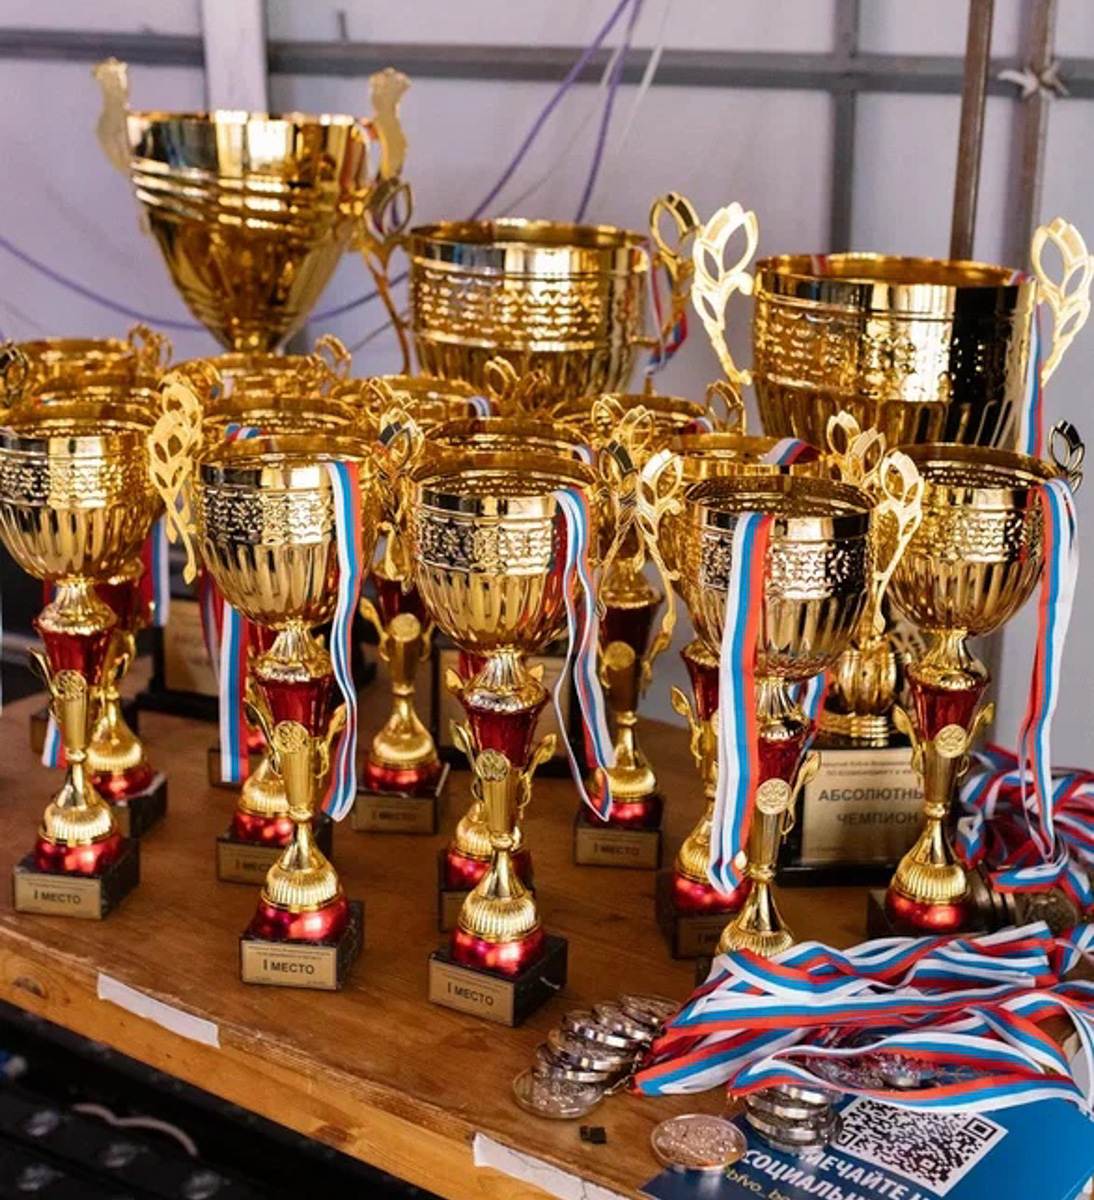 В минувшие выходные в городе-музее прошел открытый Кубок Владимирской области по бодибилдингу. На соревнования приехали 96 спортсменов из разных регионов страны. По итогам турнира будет сформирована сборная для участия в Кубке России.